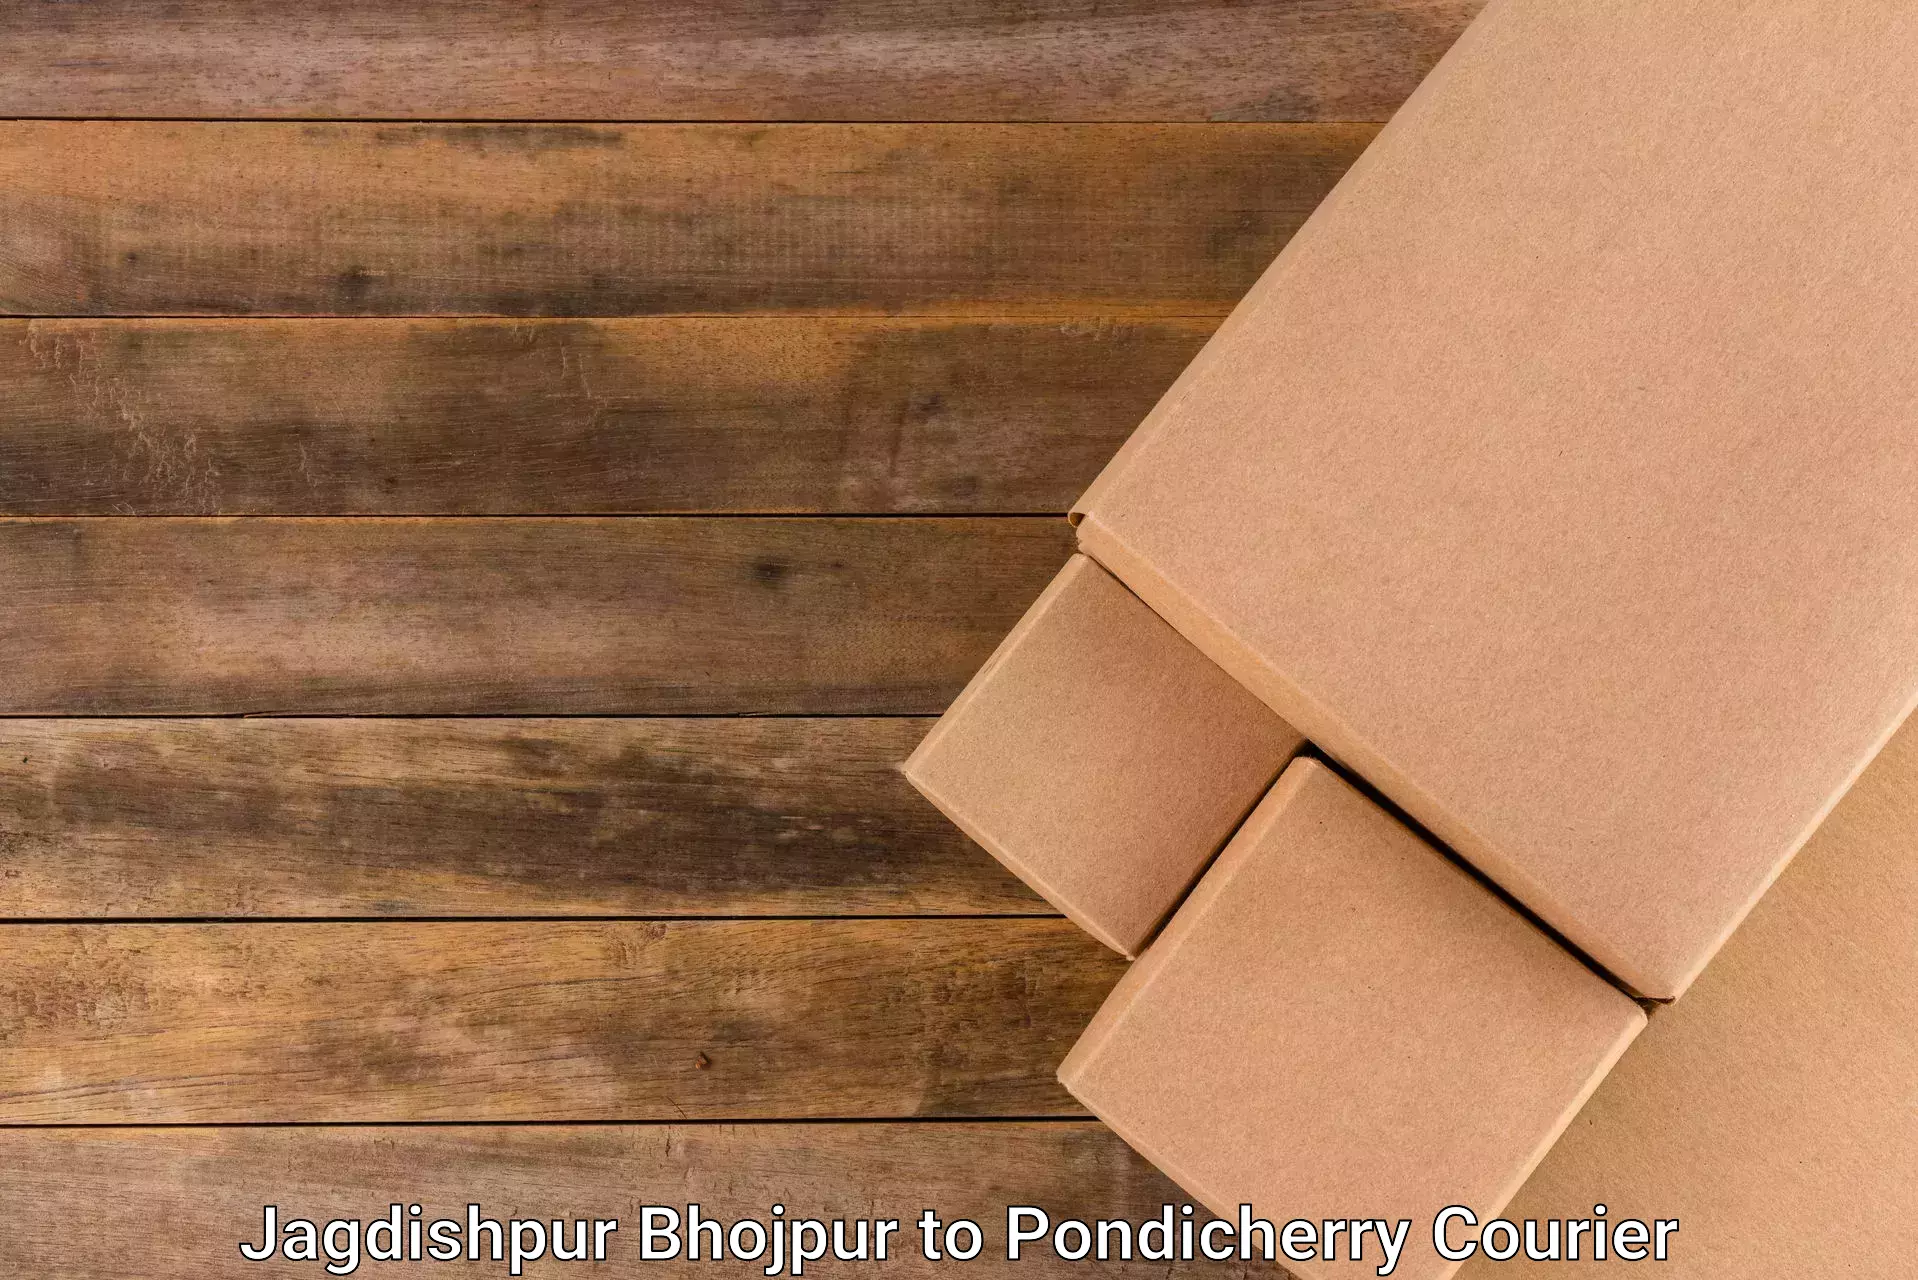 Customer-centric shipping Jagdishpur Bhojpur to Karaikal